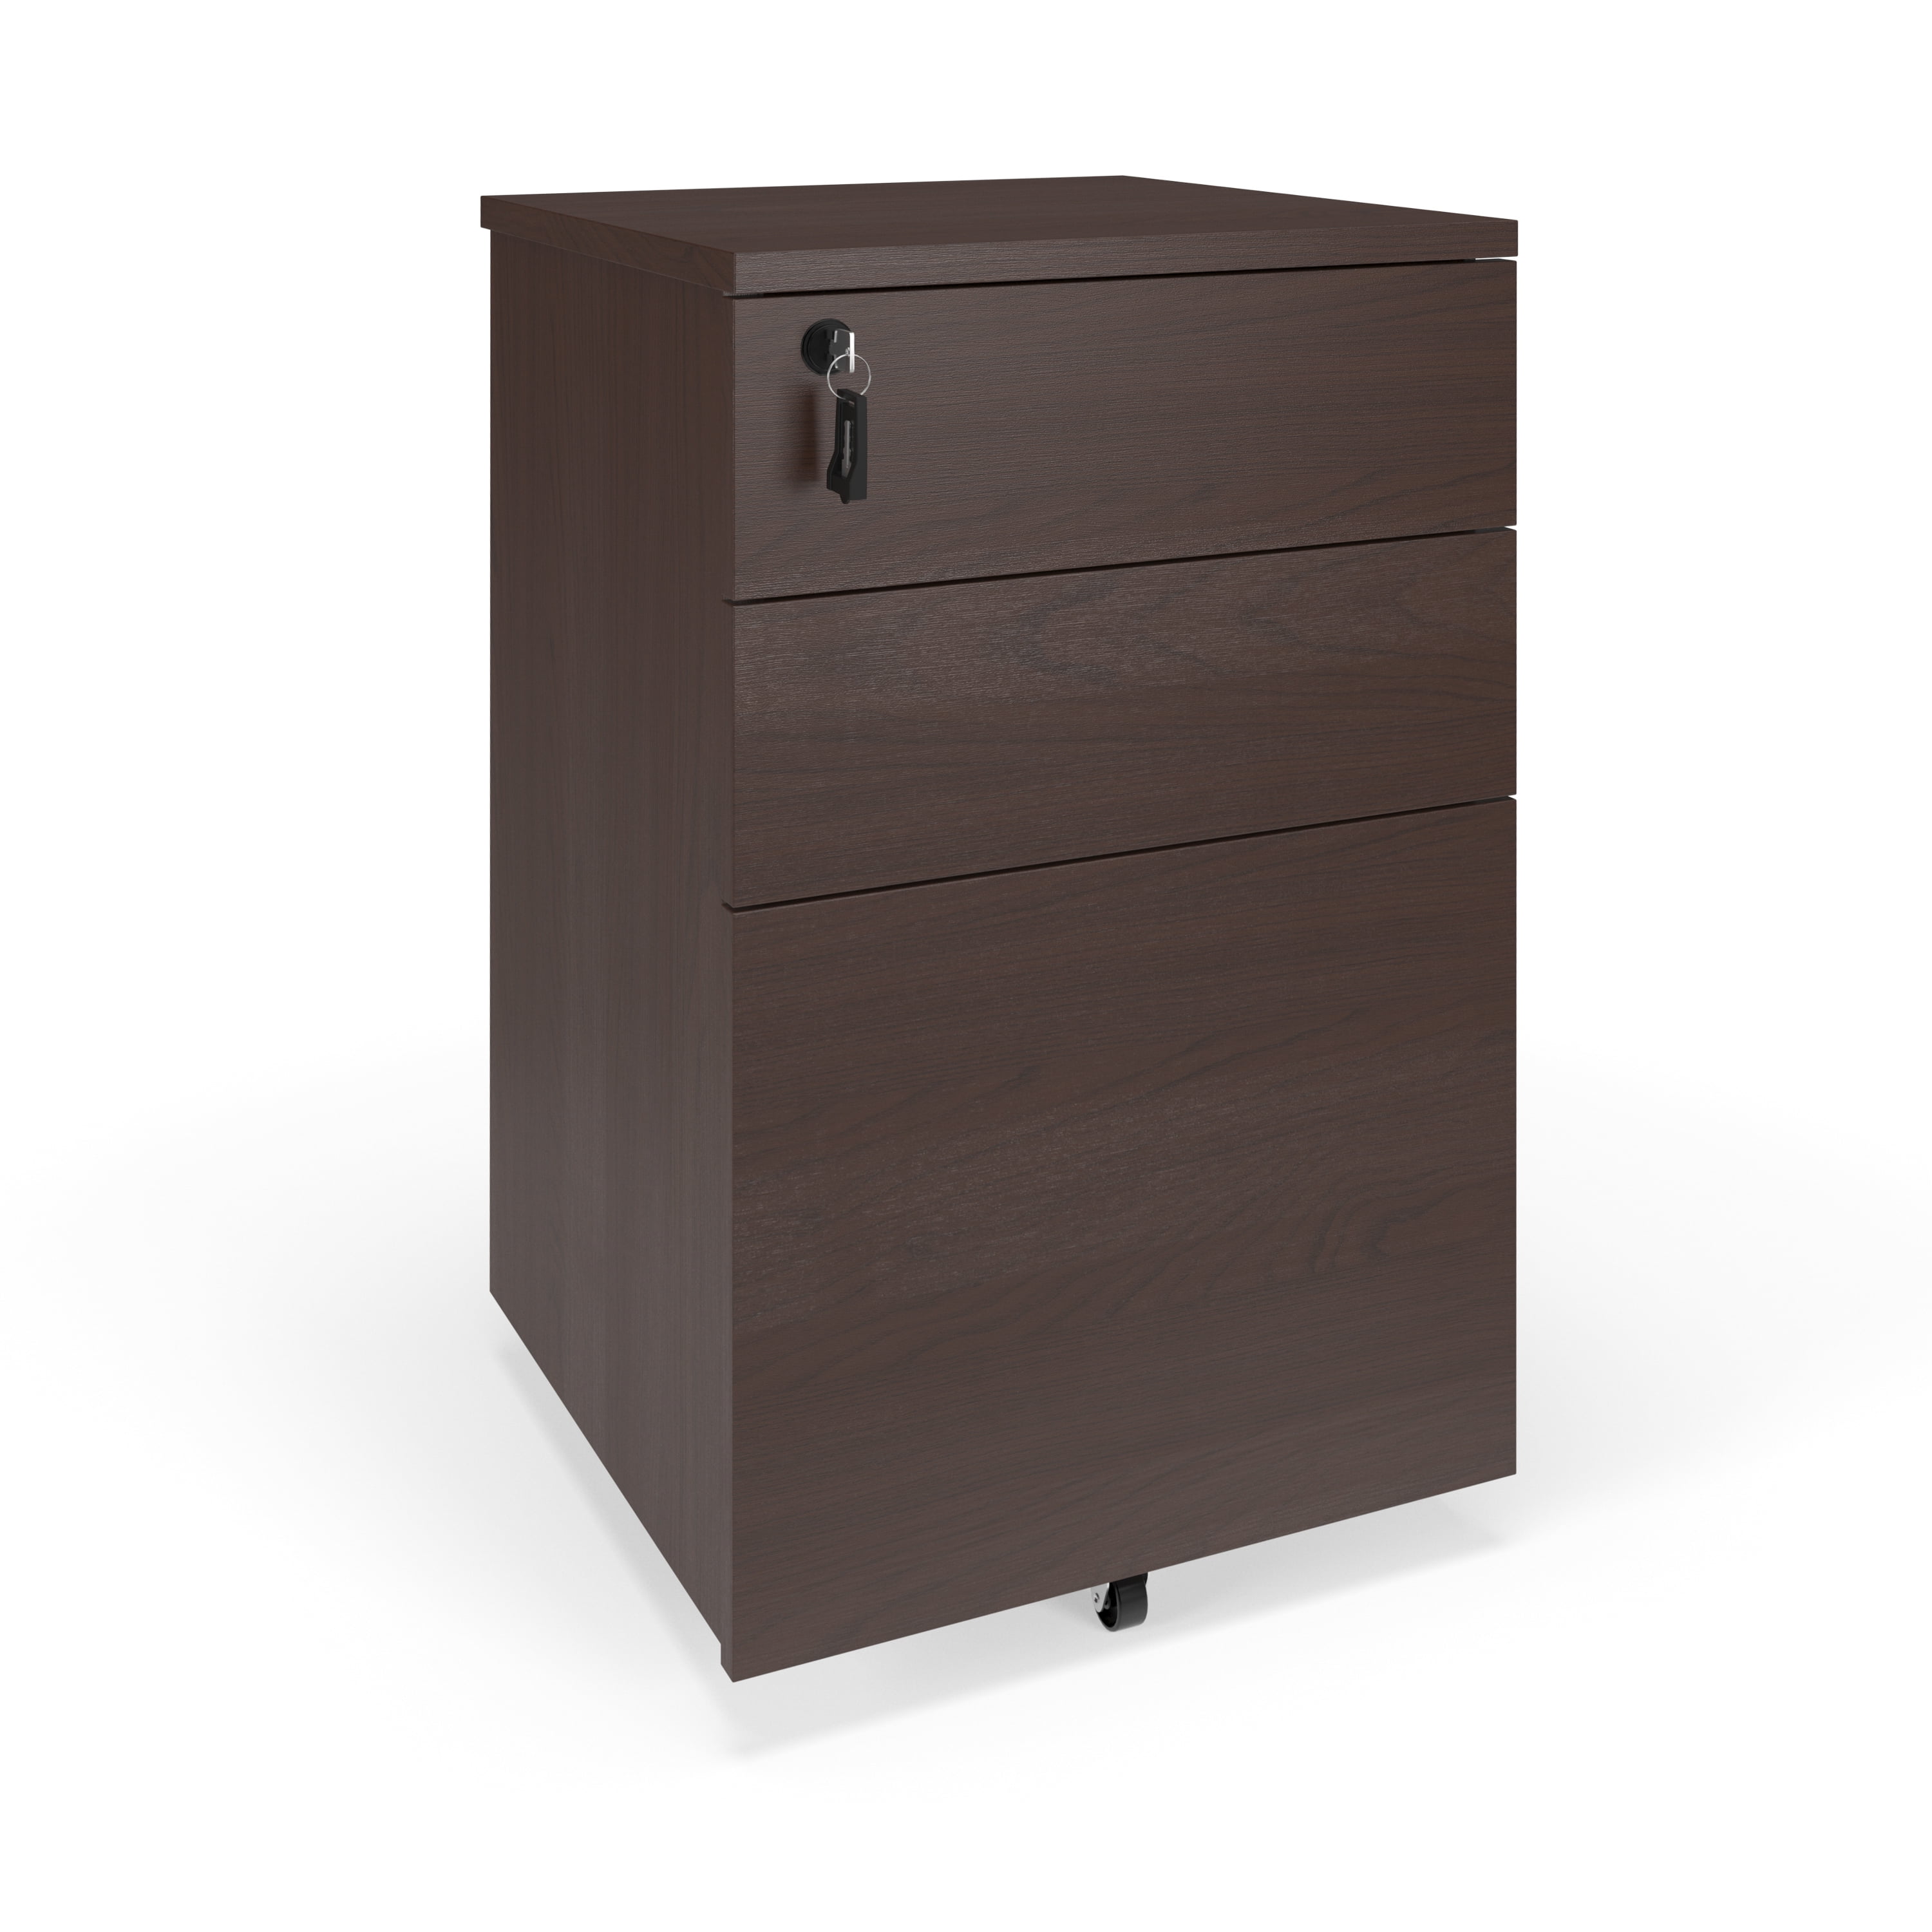 Walnut HON Basyx Commercial-Grade Mobile Wooden Pedestal Filing Cabinet Standard 